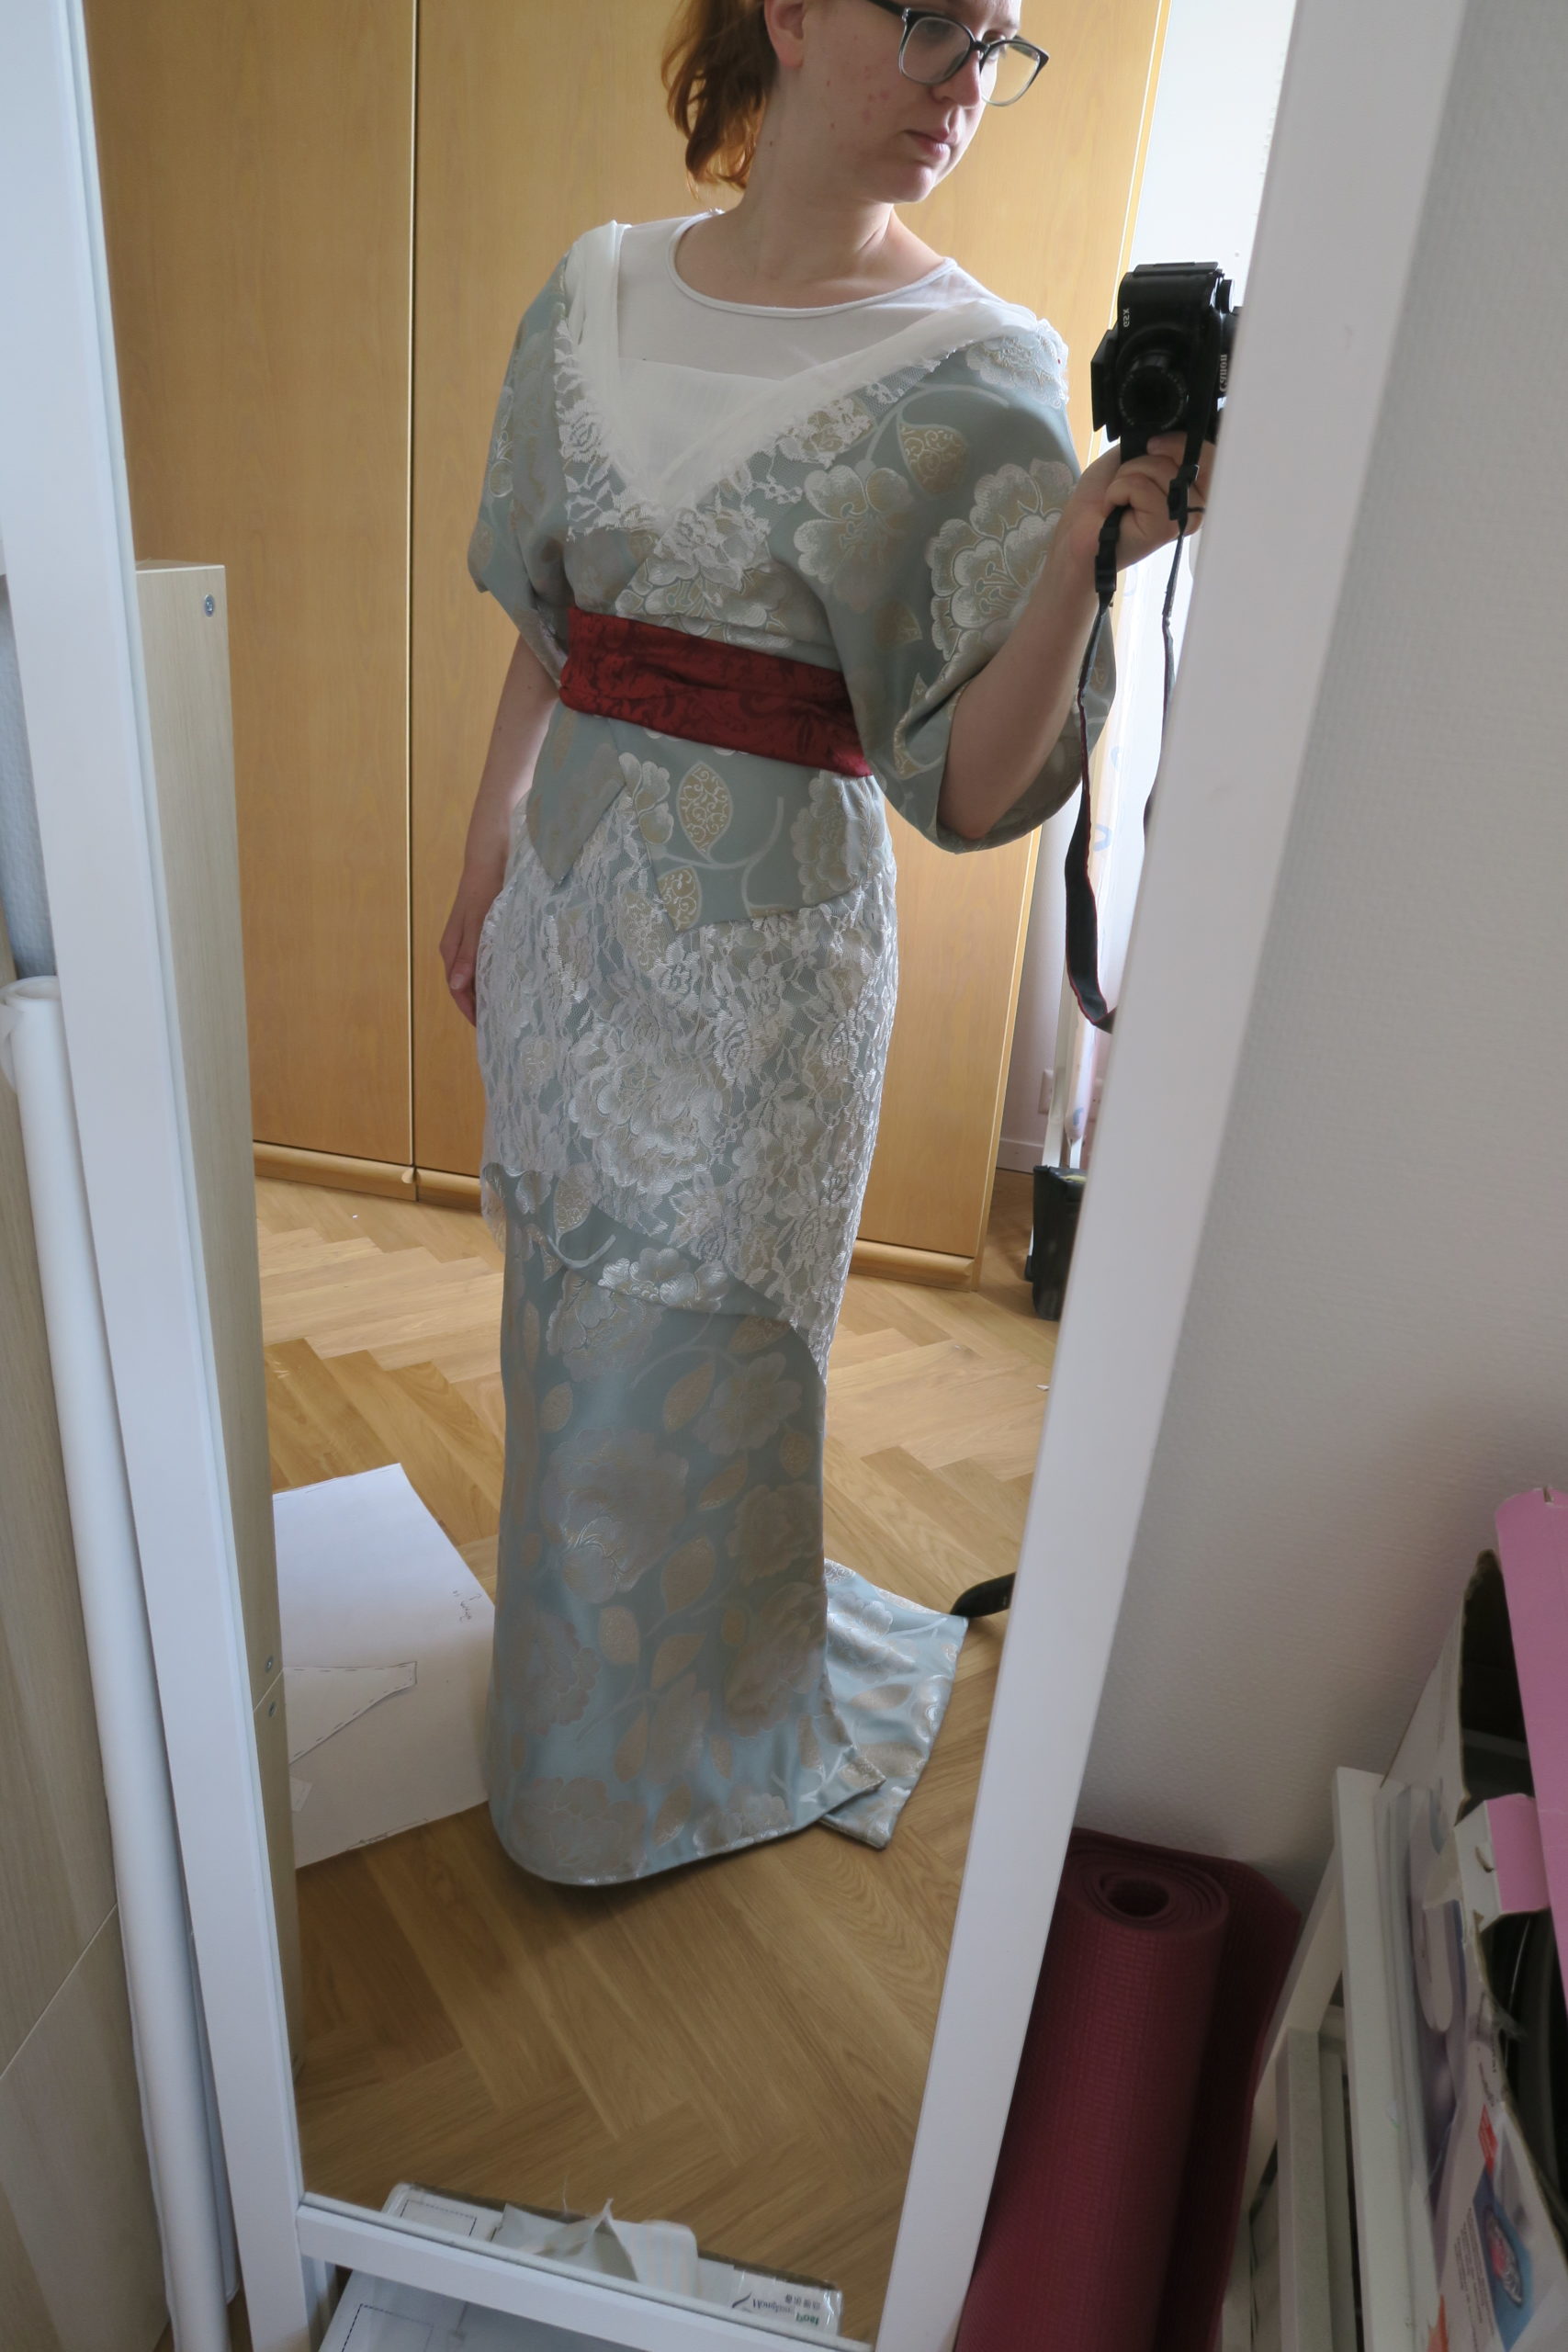 Plus Size Sequin Lace Tea Length Formal Dress - Plus Size Party Dress –  SleekTrends